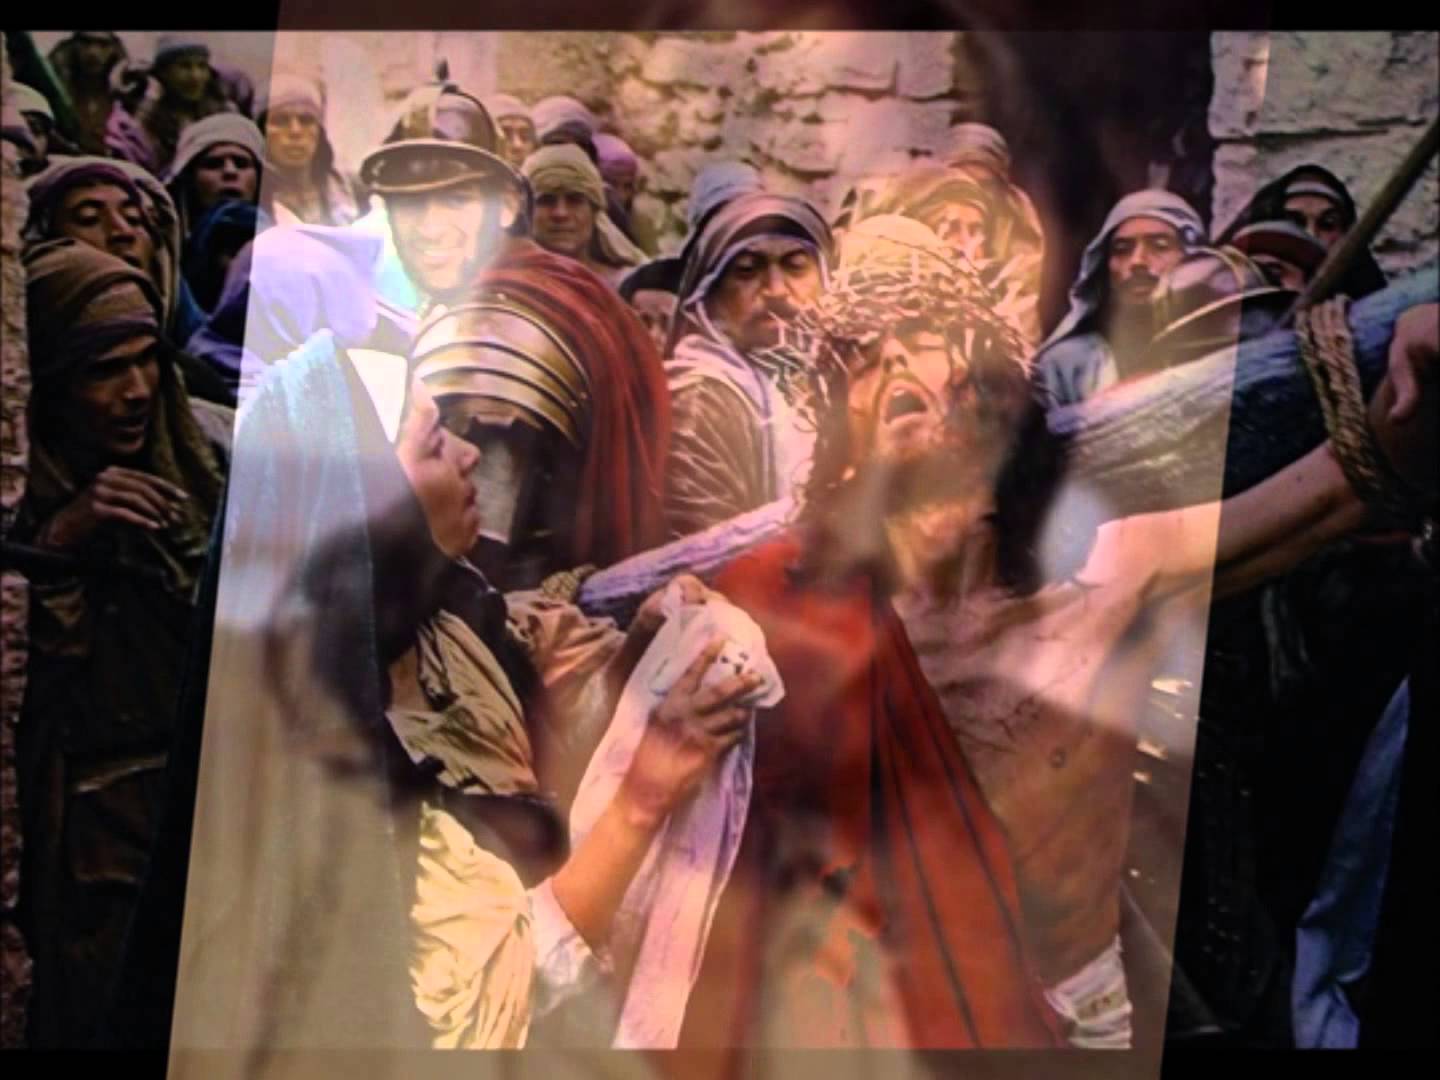 “O Ιησούς από τη Ναζαρέτ”: Απίστευτο υλικό σε βίντεο από τα παρασκήνια σκάει 40 χρόνια μετά